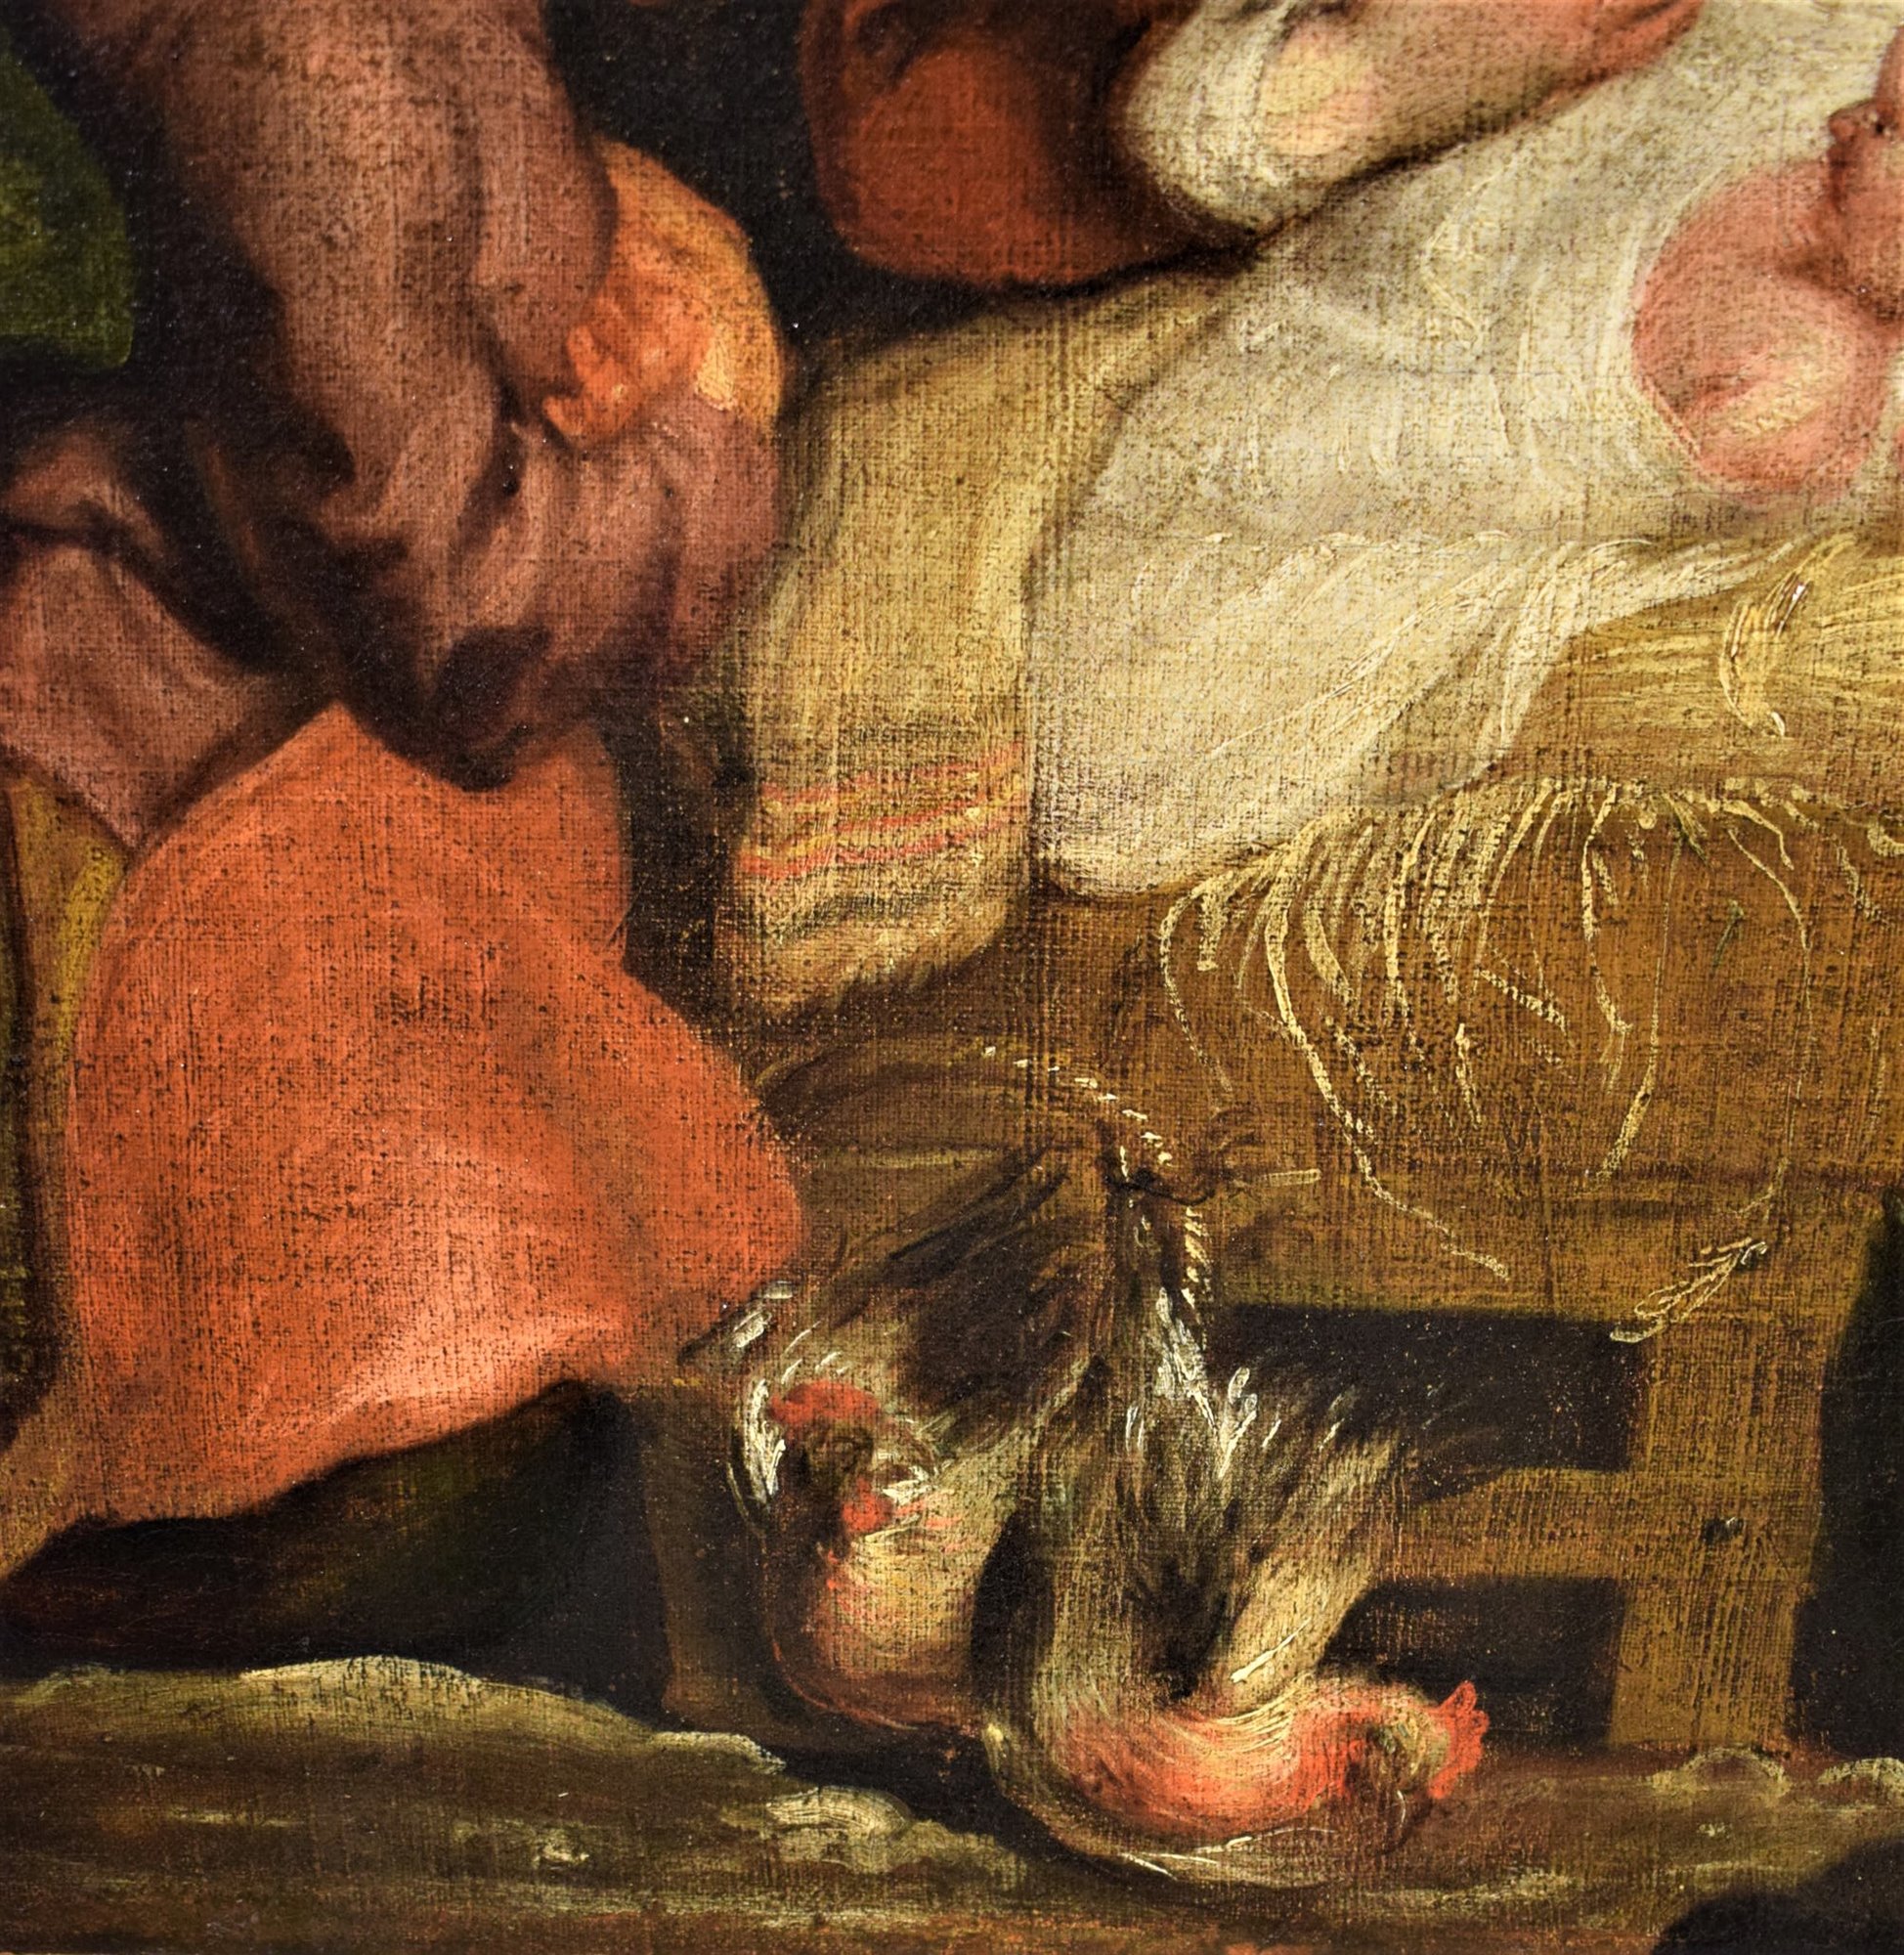 Natività e Adorazione dei Pastori,  XVII secolo